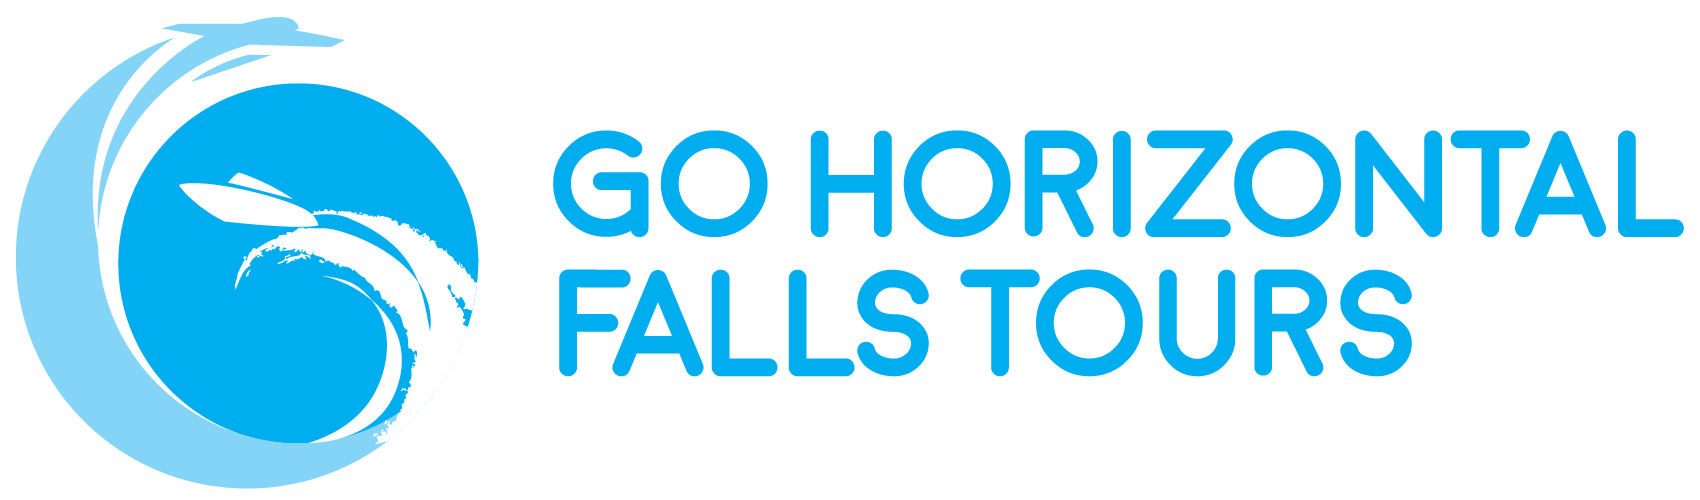 Go Horizontal Falls Tours Logo